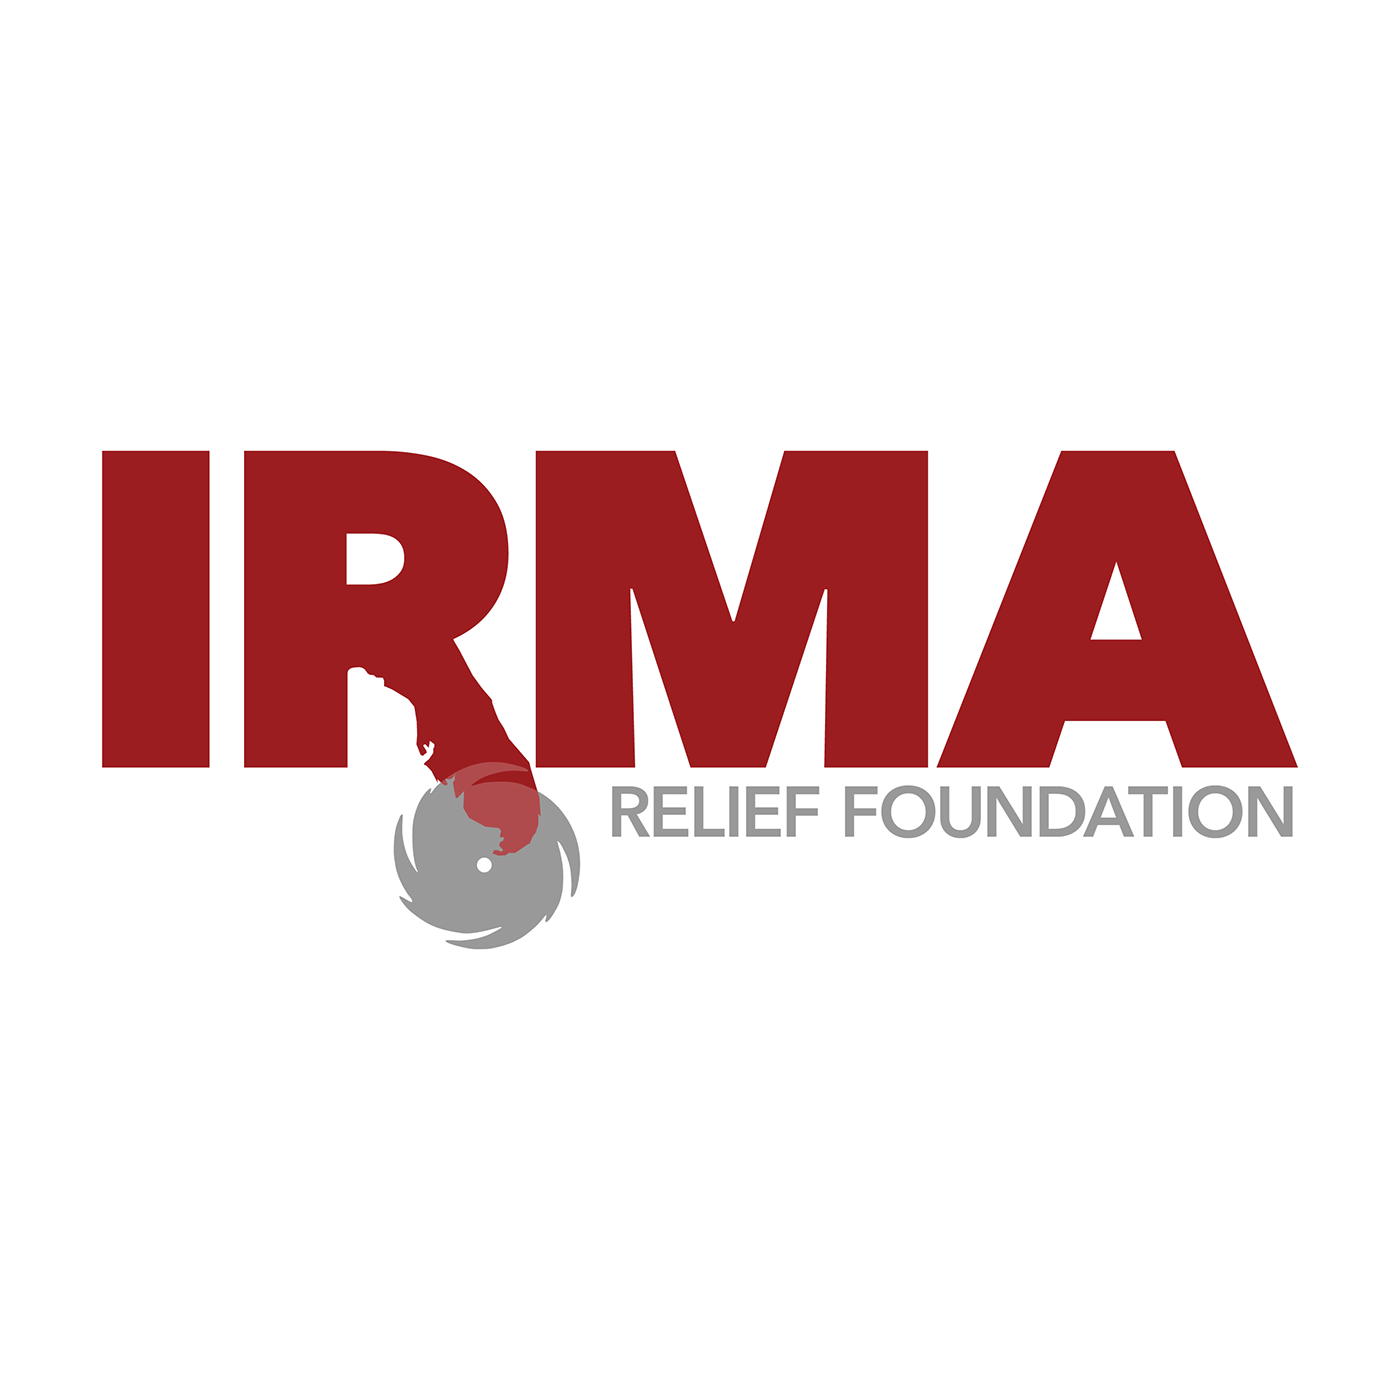 hurricane Irma relief foundation logo